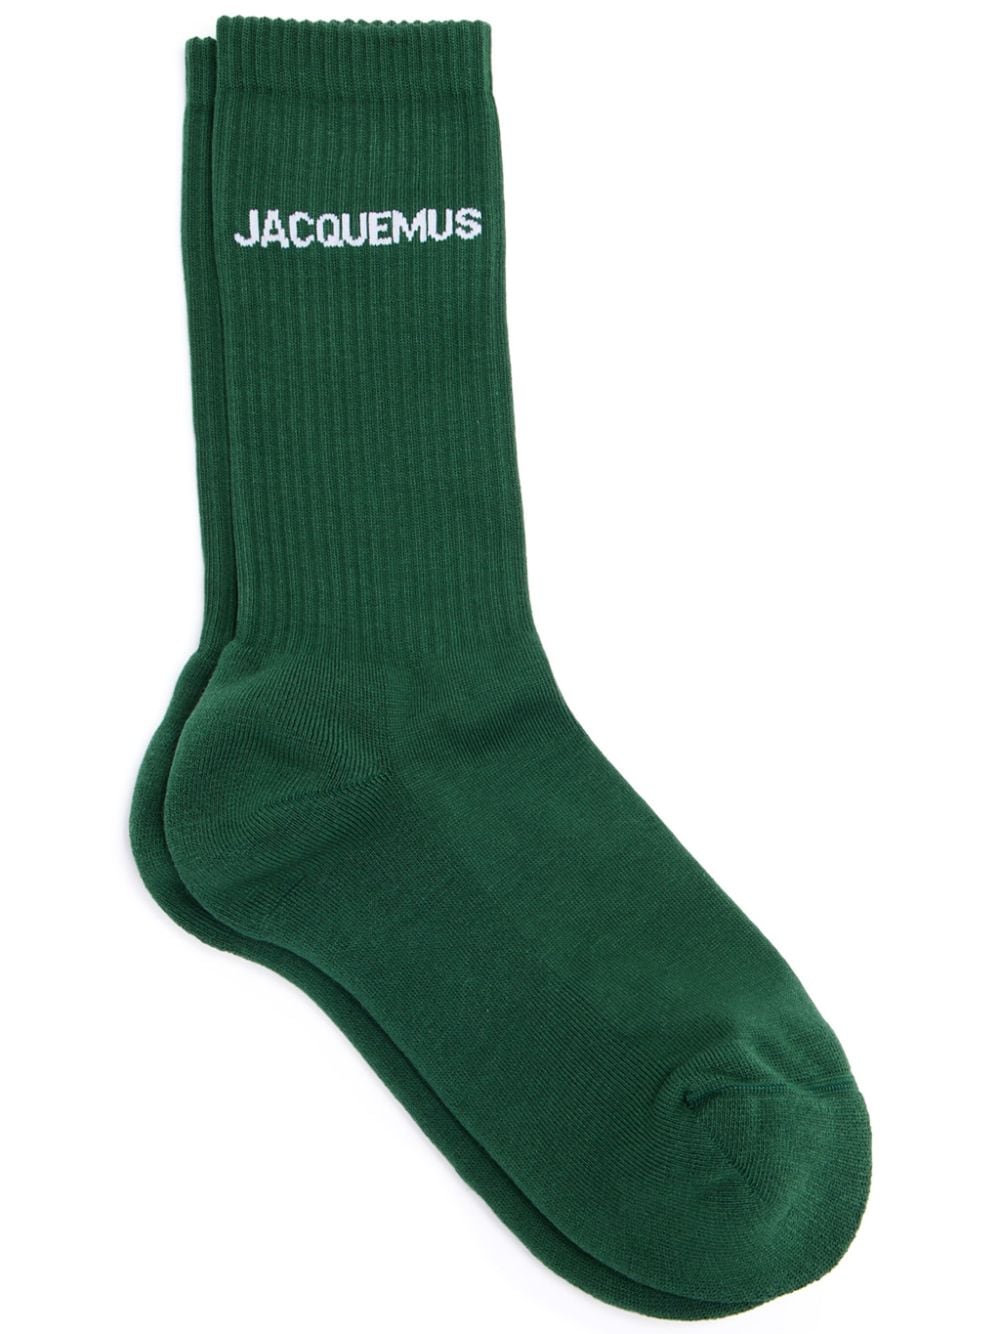 Jacquemus Les Chaussettes Jacquemus logo-intarsia socks - Green von Jacquemus